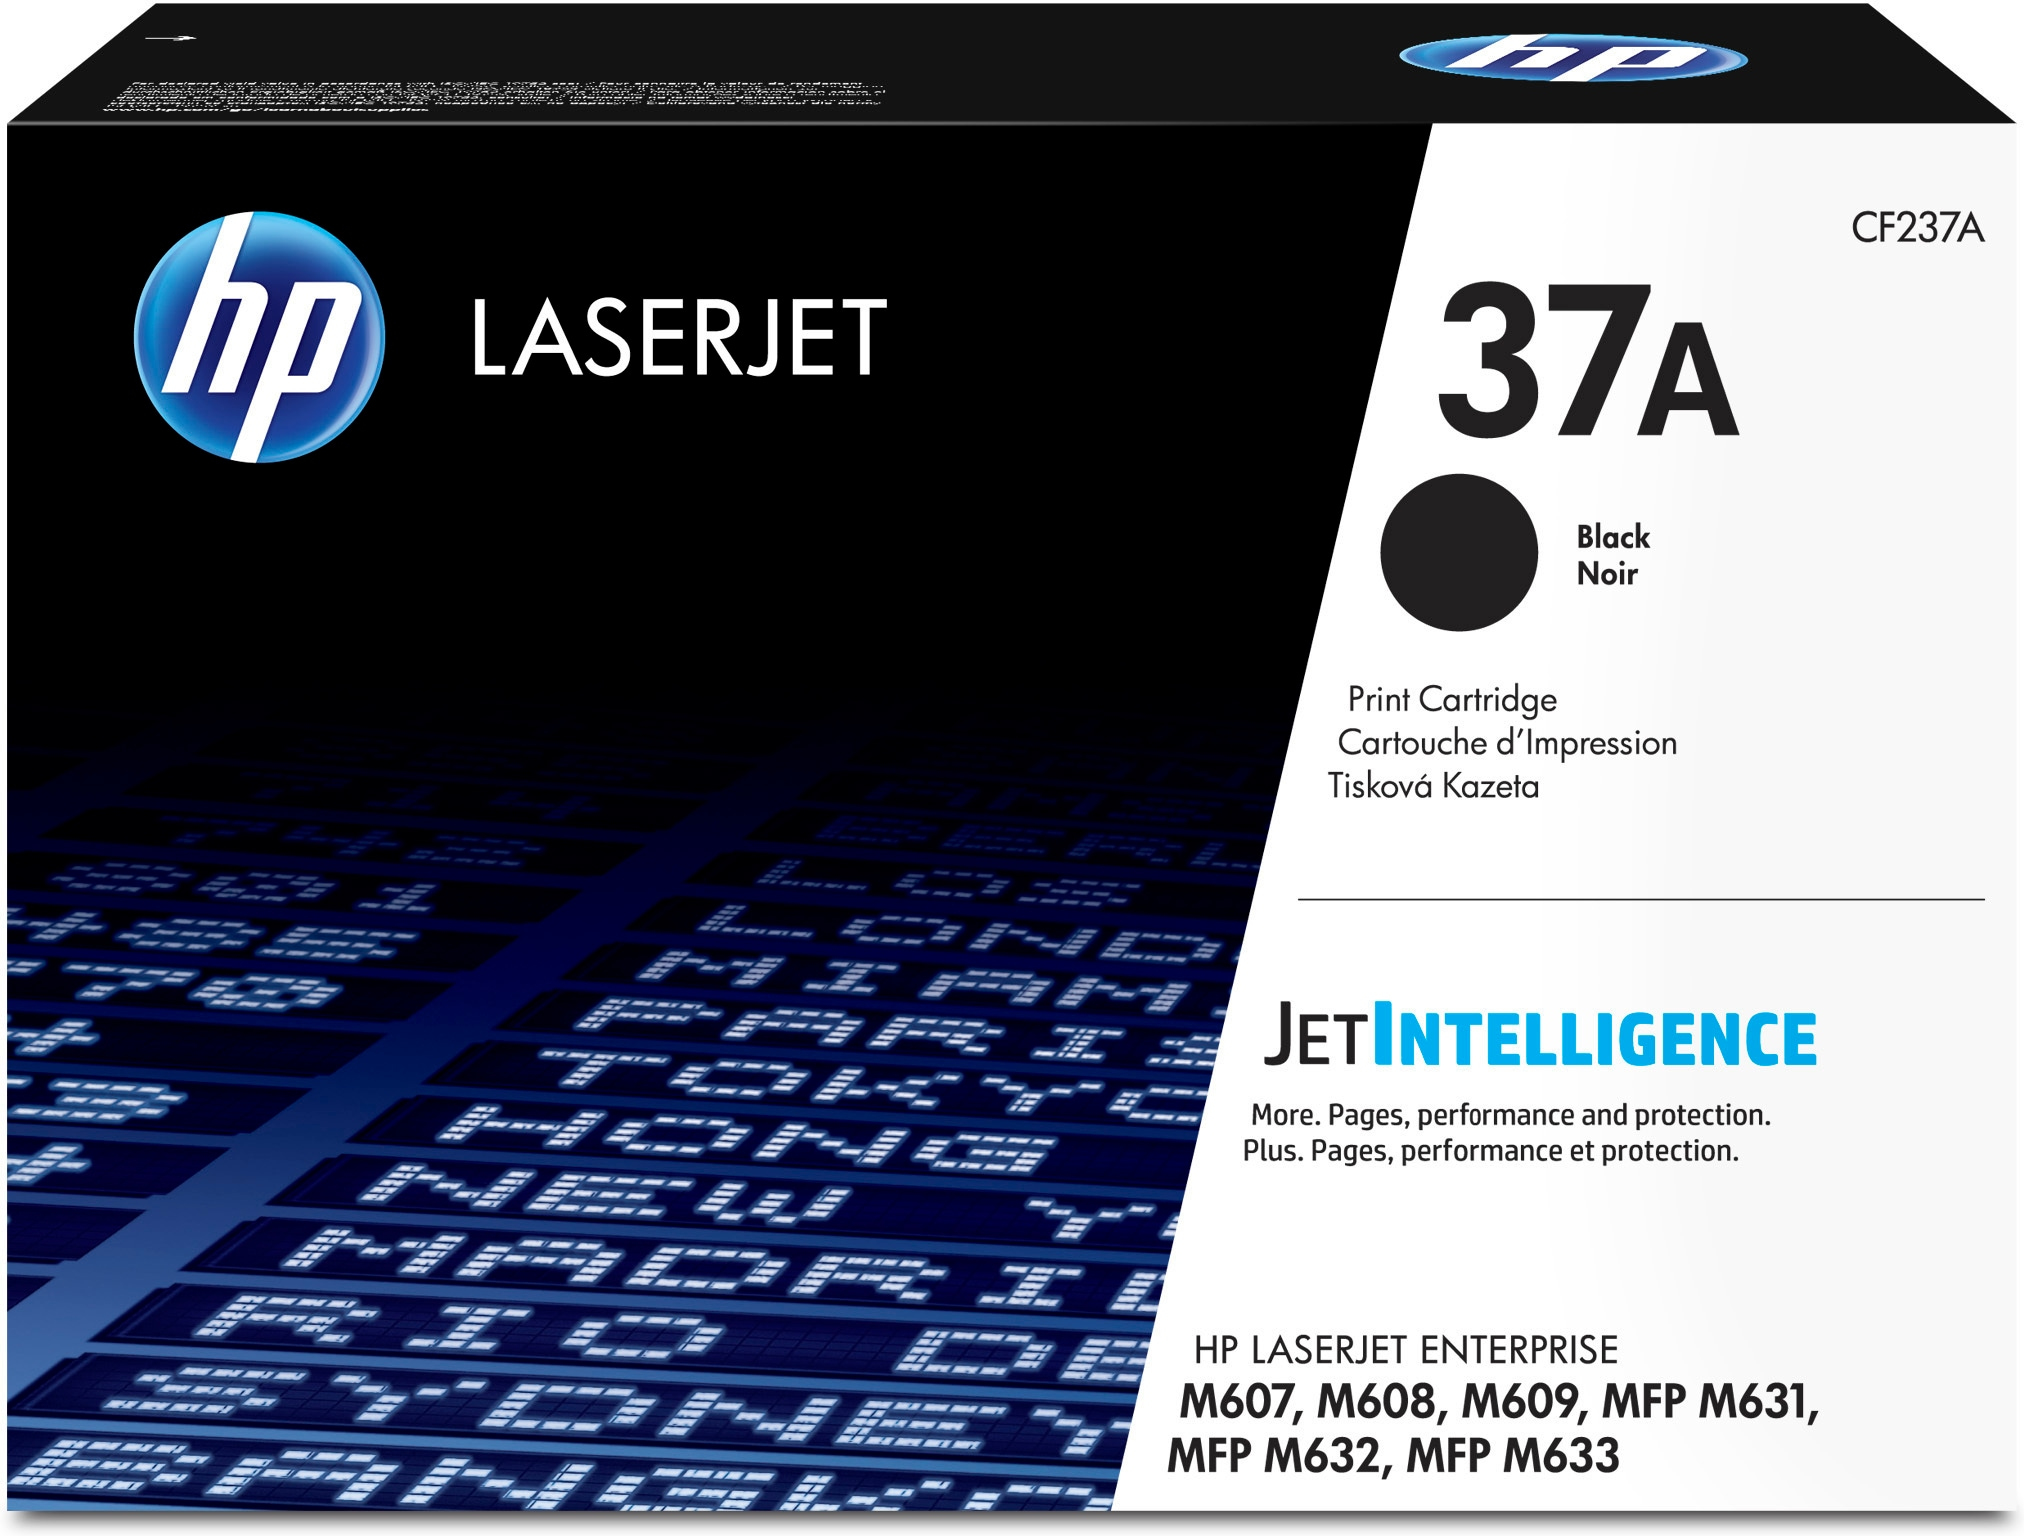 Bild von HP LaserJet 37A - Tonereinheit Original - Schwarz - 11.000 Seiten